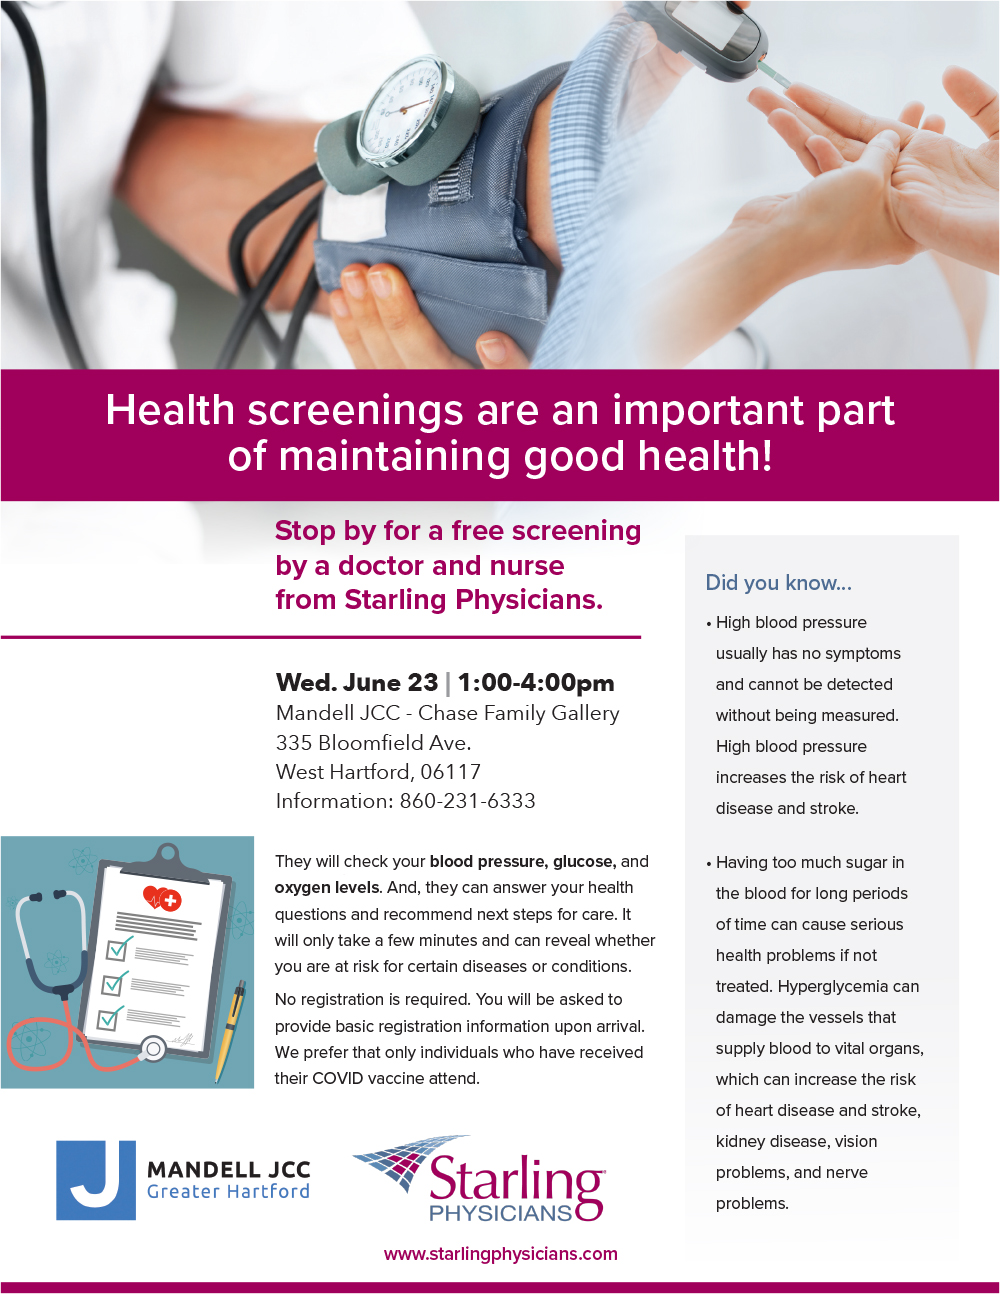 FREE Health Screenings